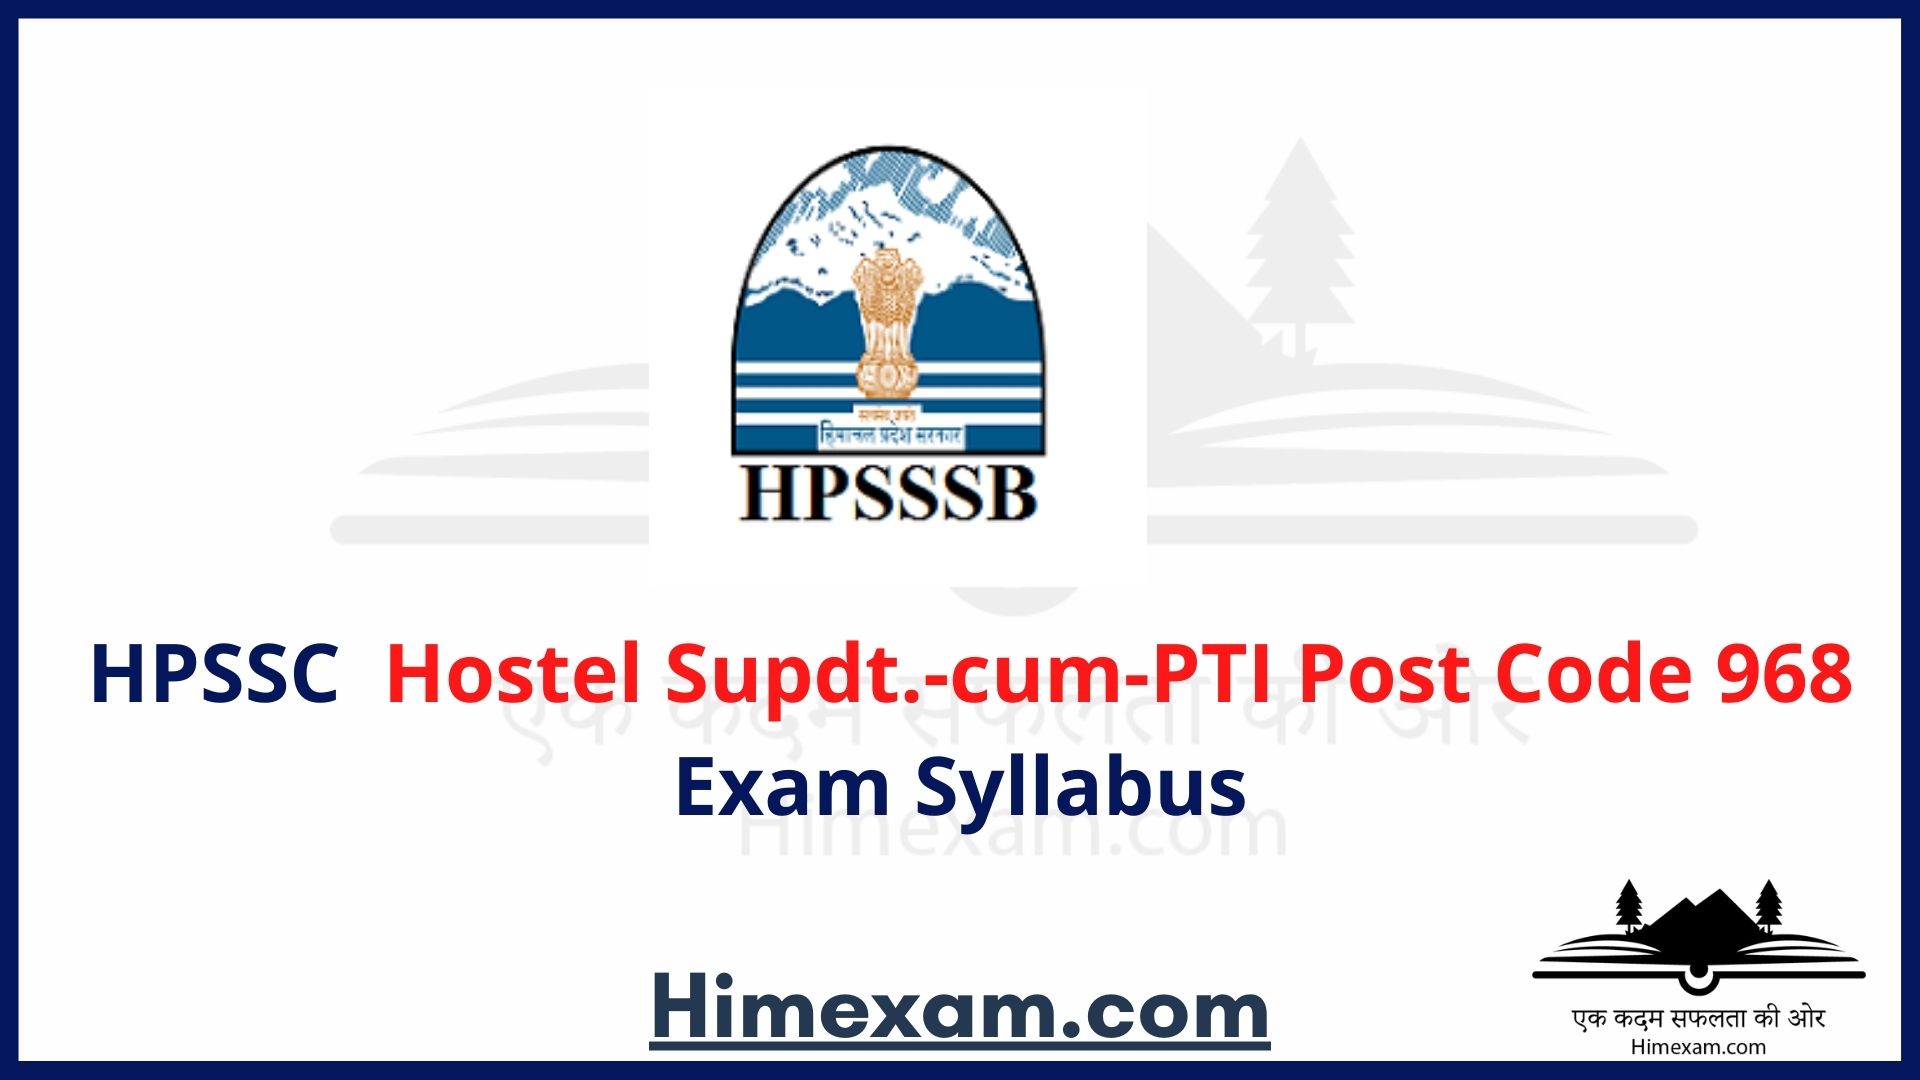 HPSSC Hostel Supdt.-cum-PTI Post Code 968 Exam Syllabus